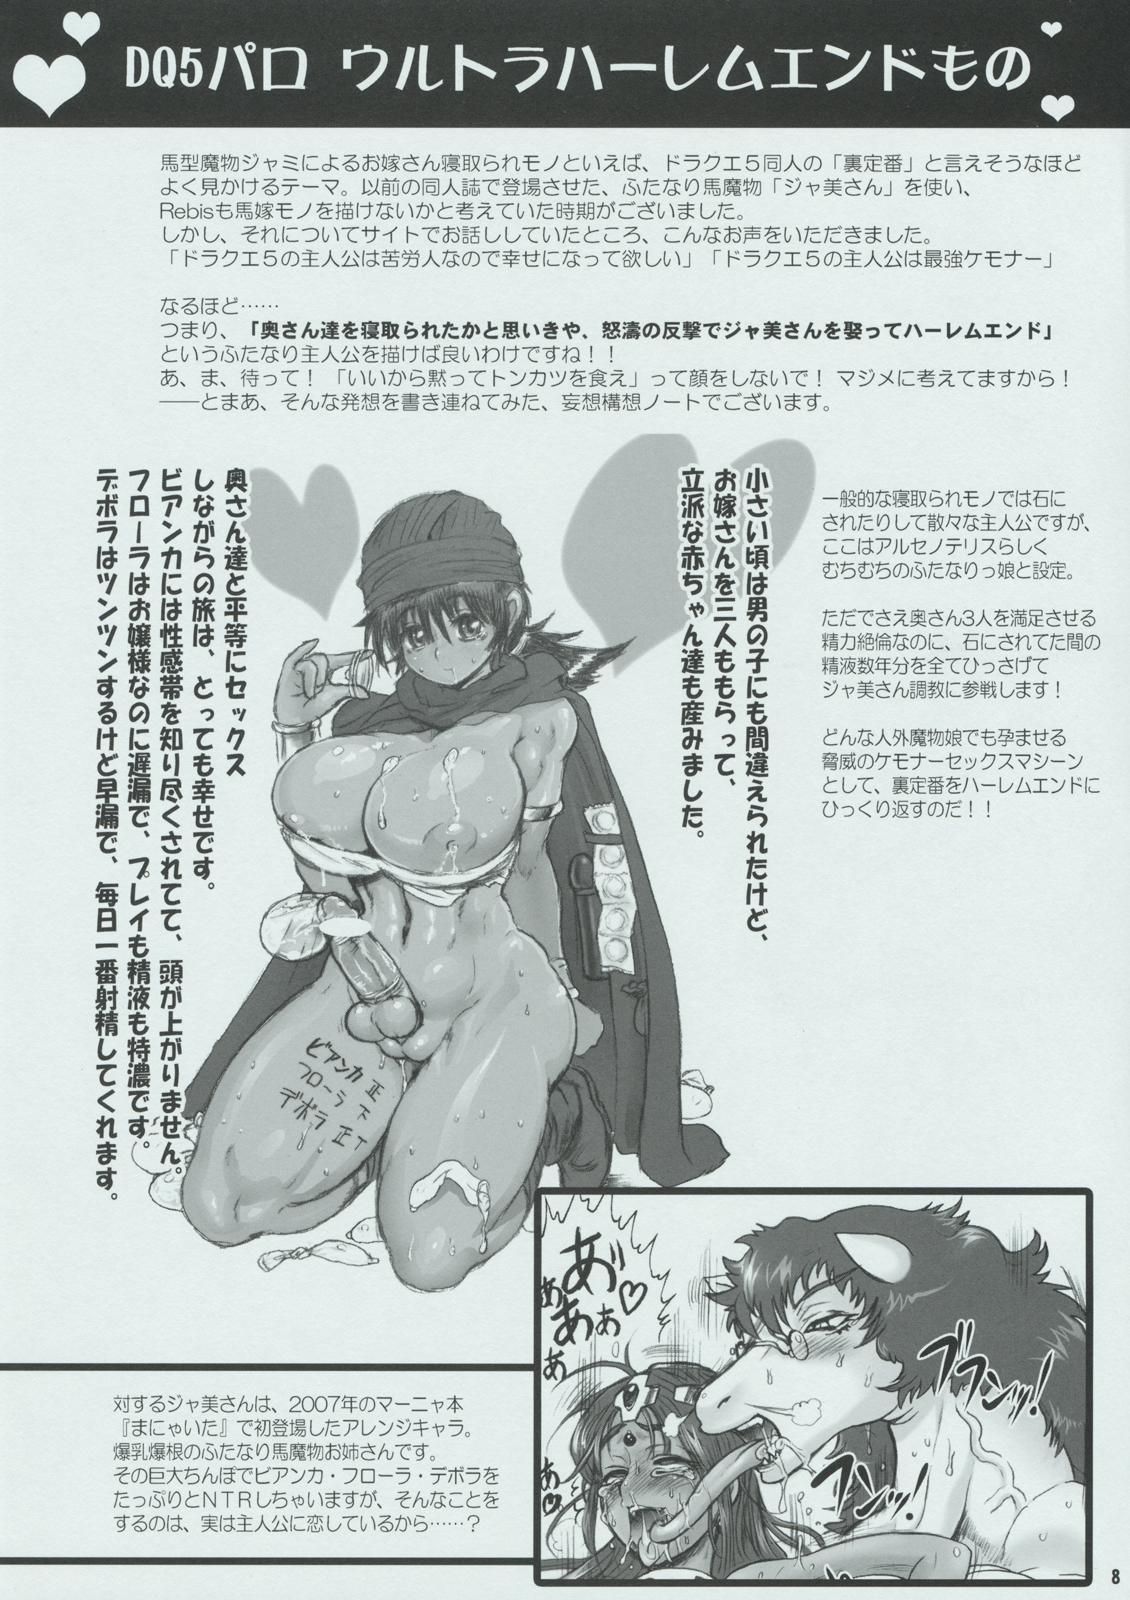 Old Young (Futaket 05) [Arsenothelus (Rebis)] Arsenothelus Kousou (Mousou) Note (Dragon Quest, Street Fighter) - Street fighter Tetas - Page 8